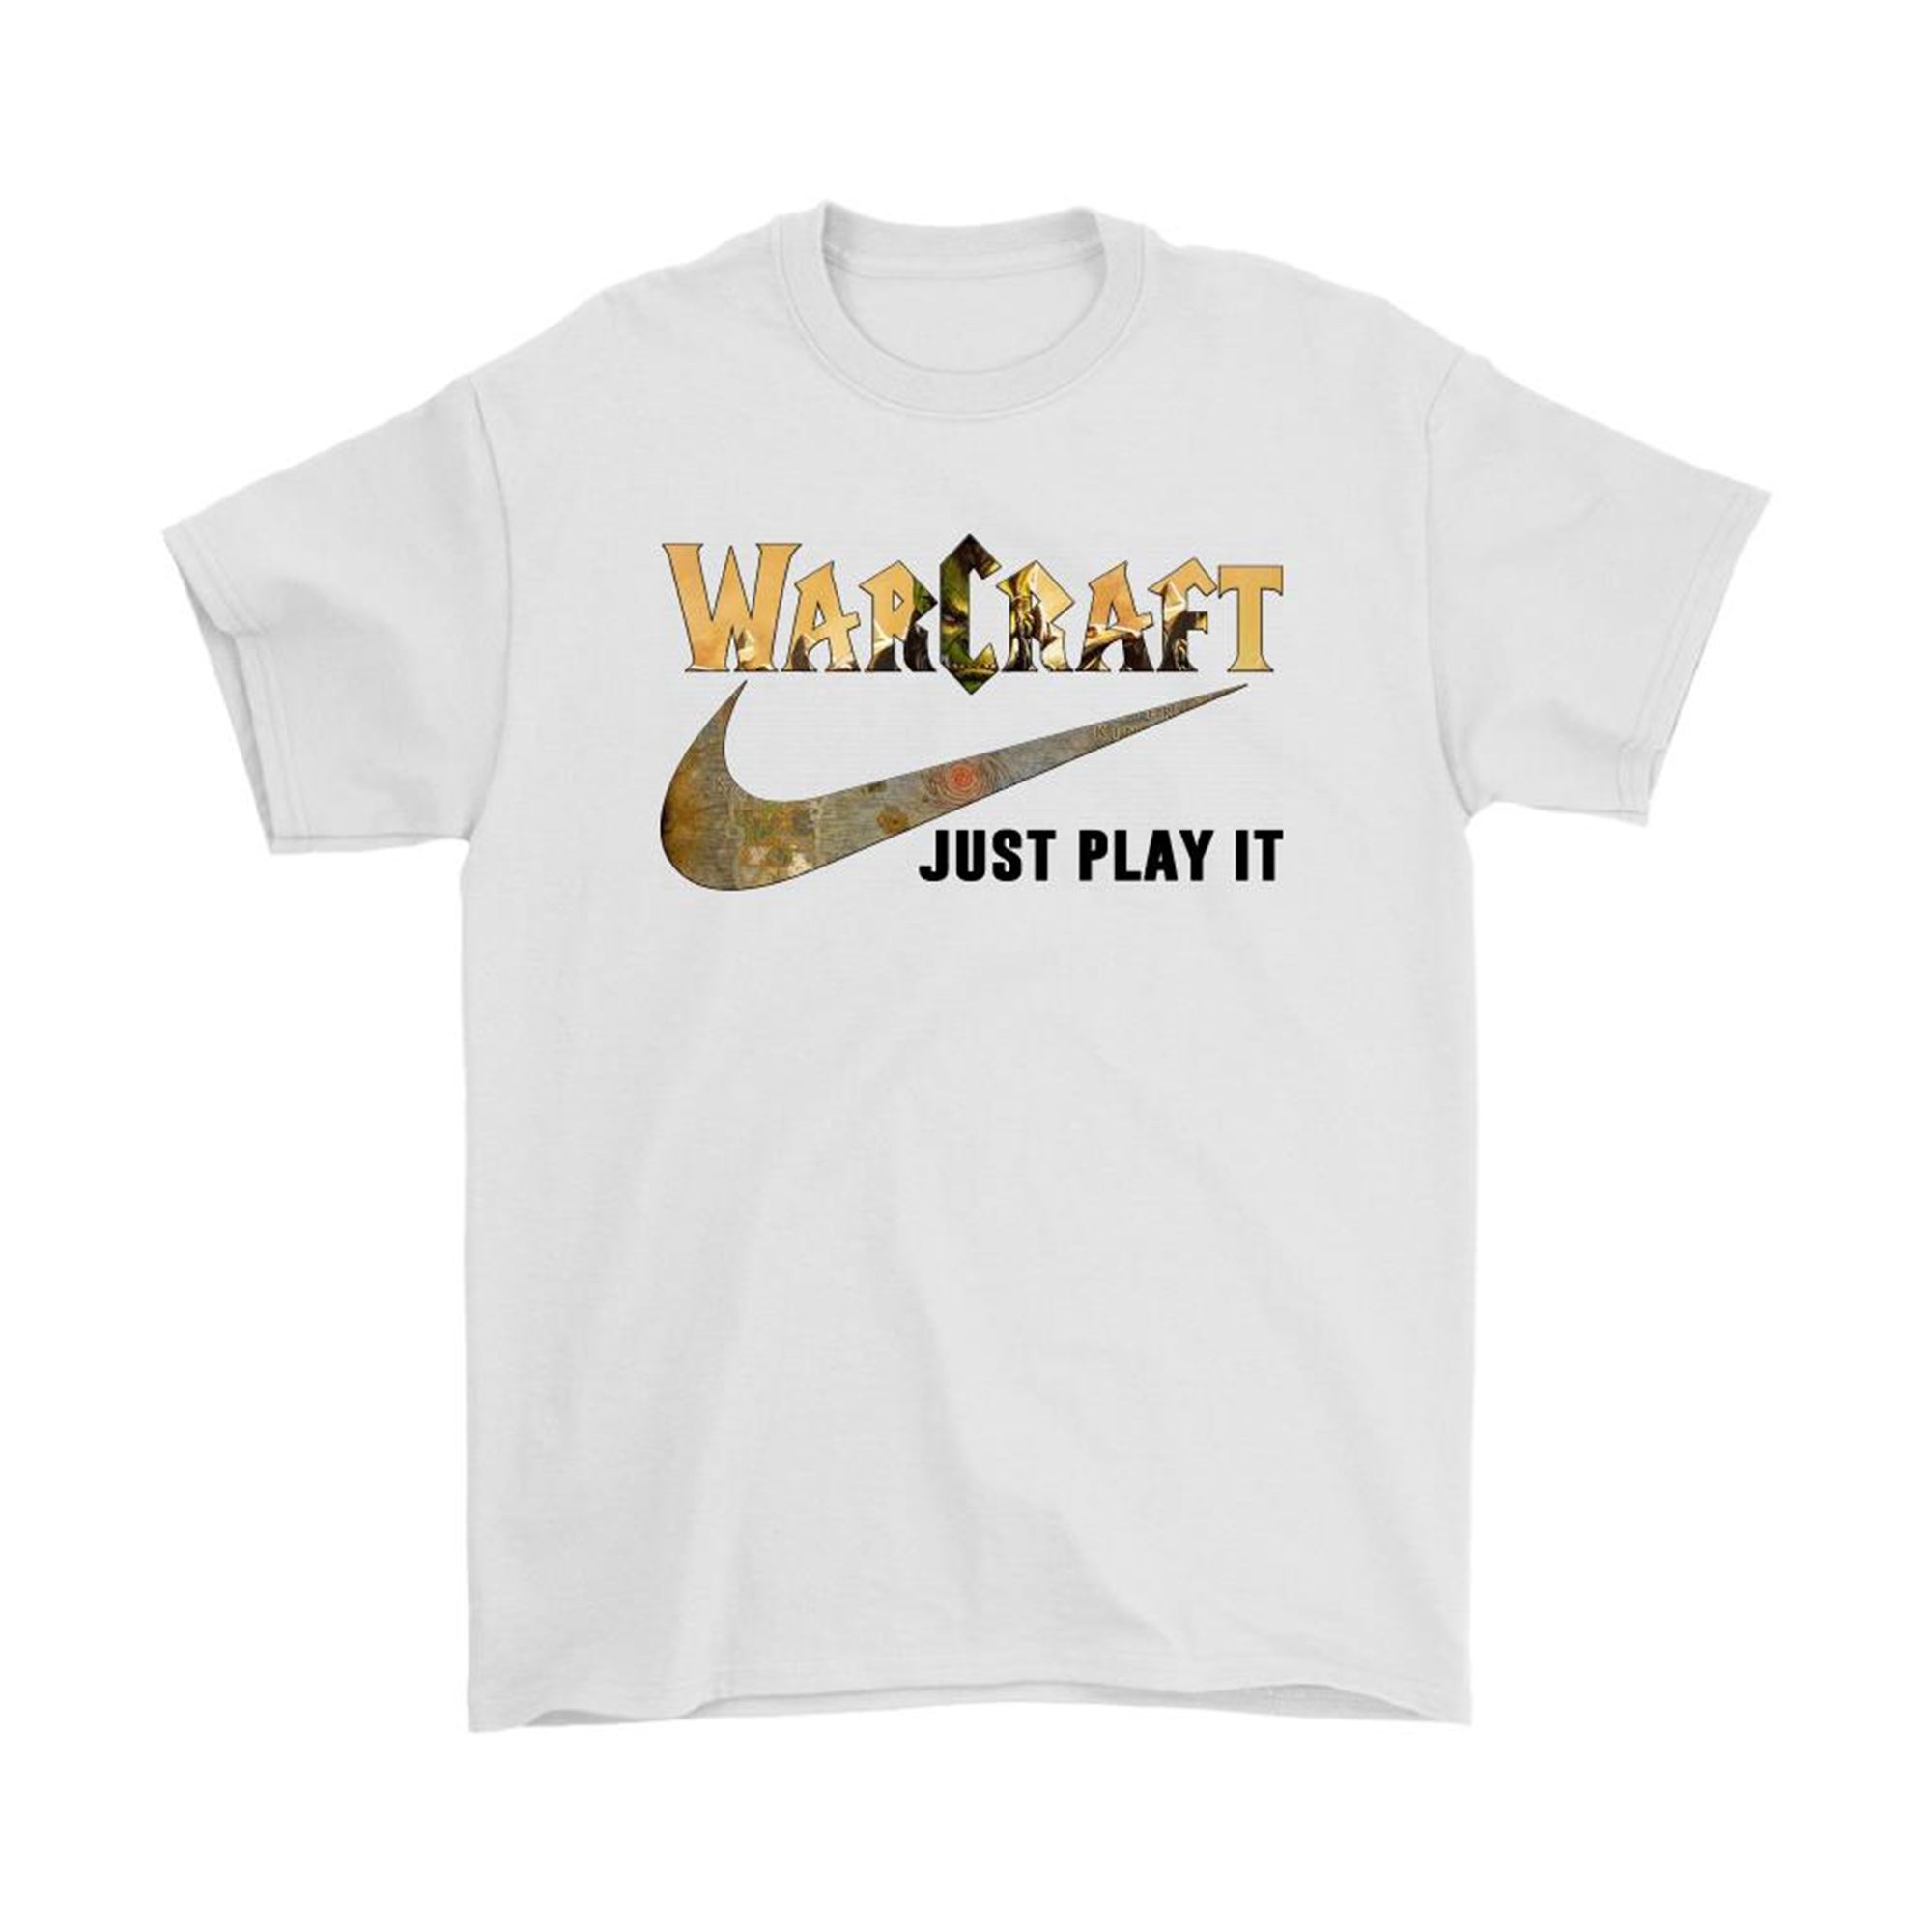 Warcraft X Nike Just Play It Shirts